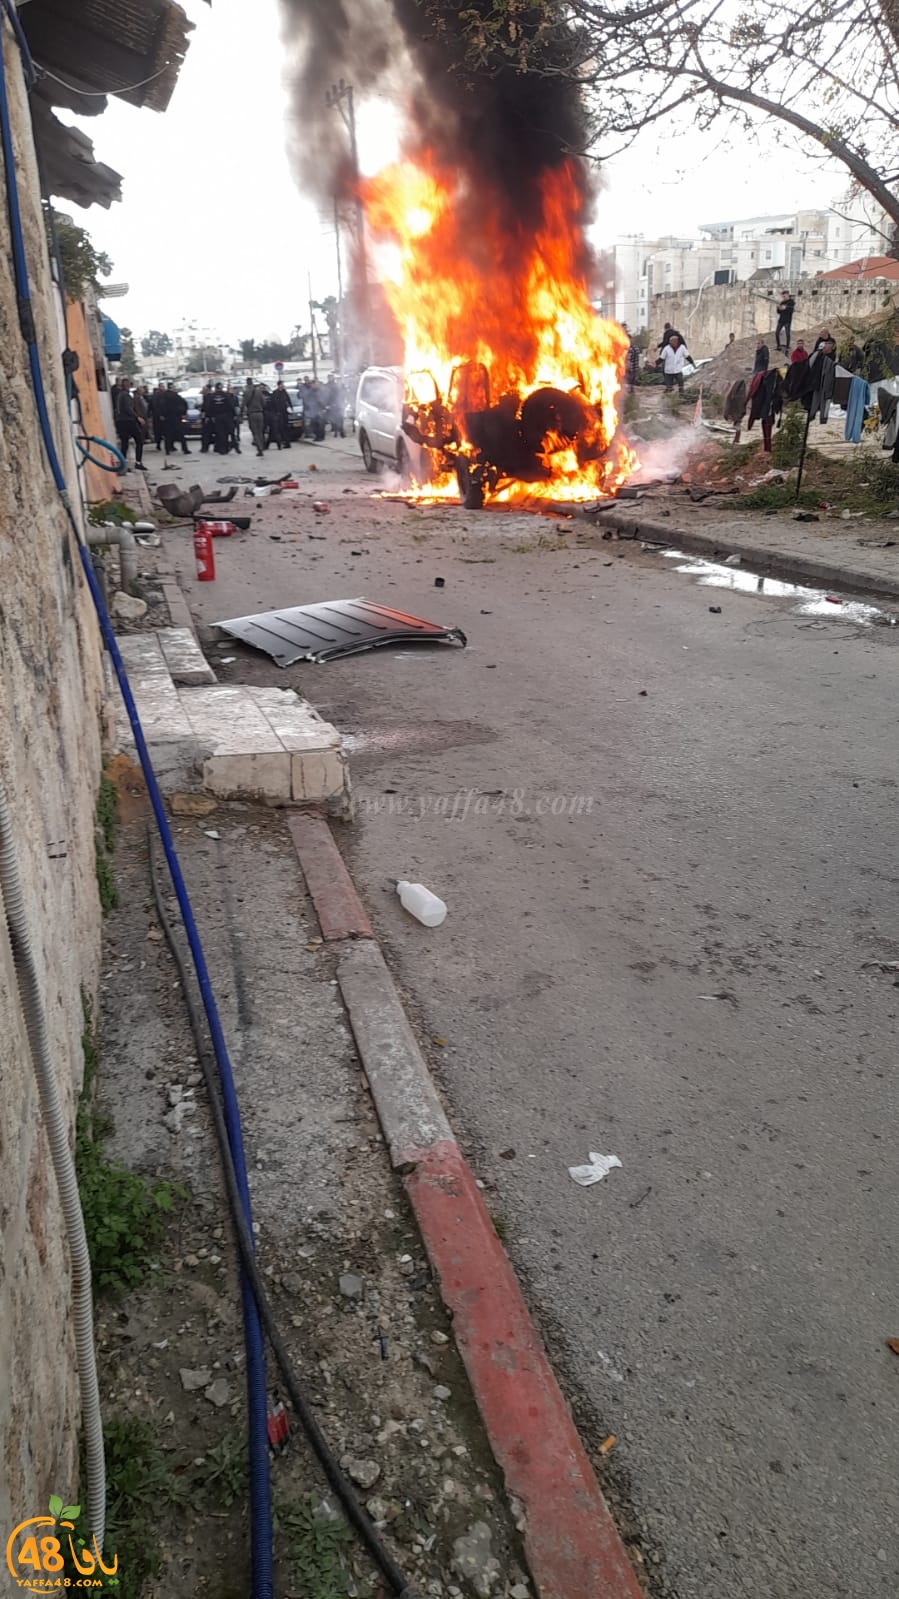  اللد: انفجار مركبة وأنباء عن اصابات 